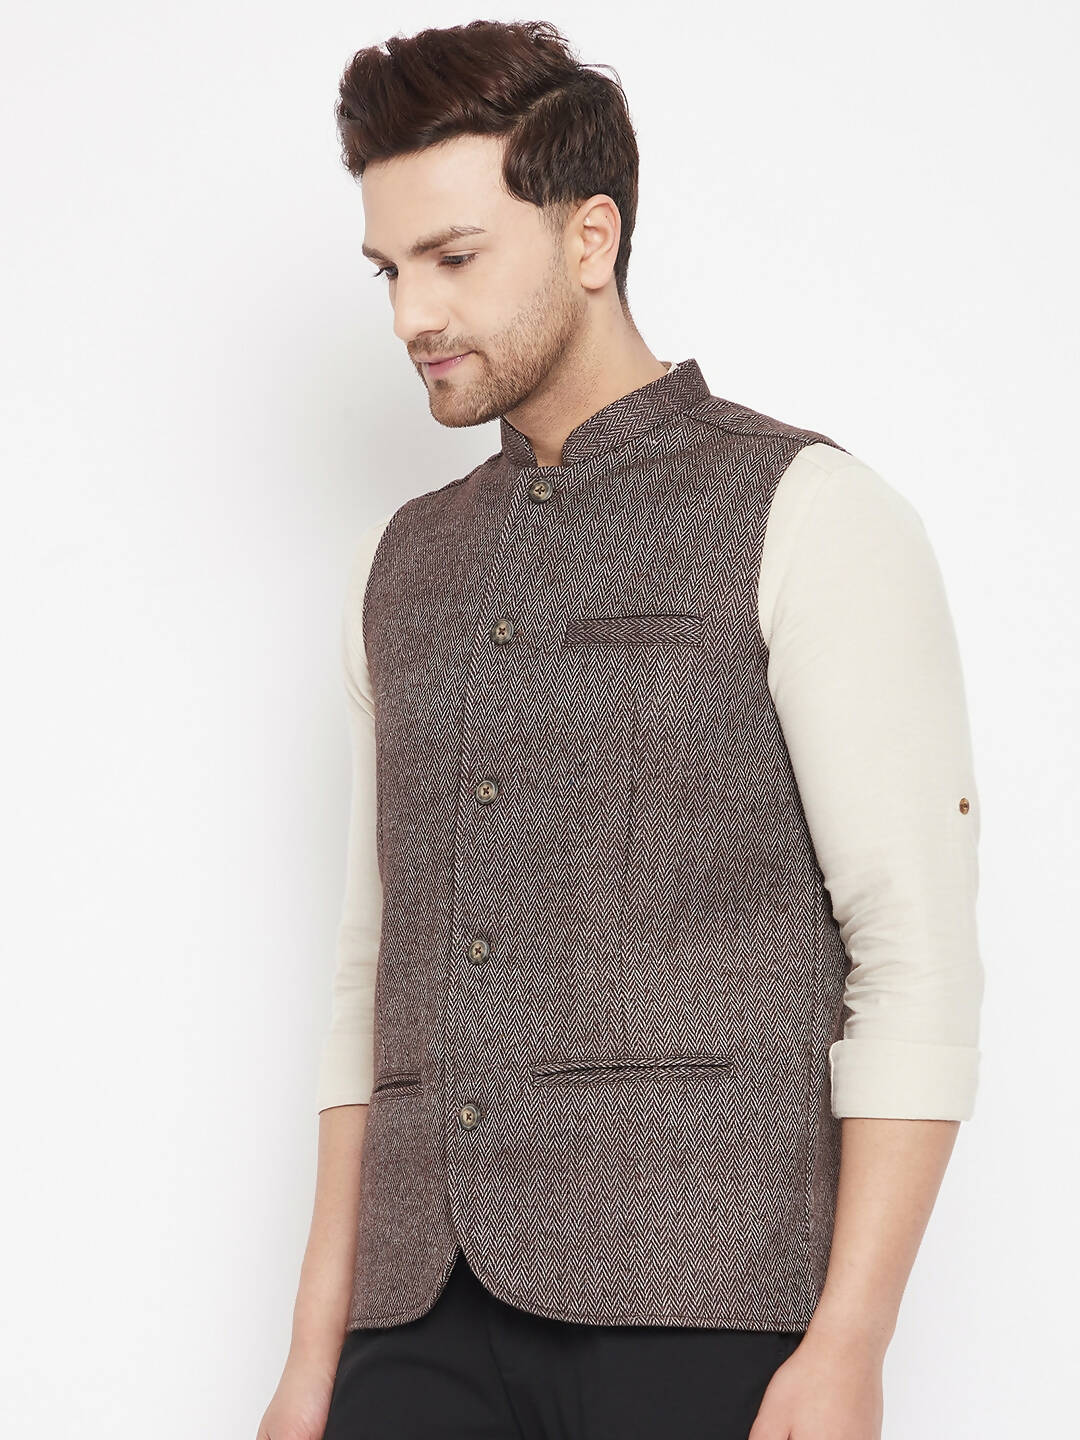 Buy Printed Banarasi Silk Nehru Jacket in Brown (NMK-6454) Online